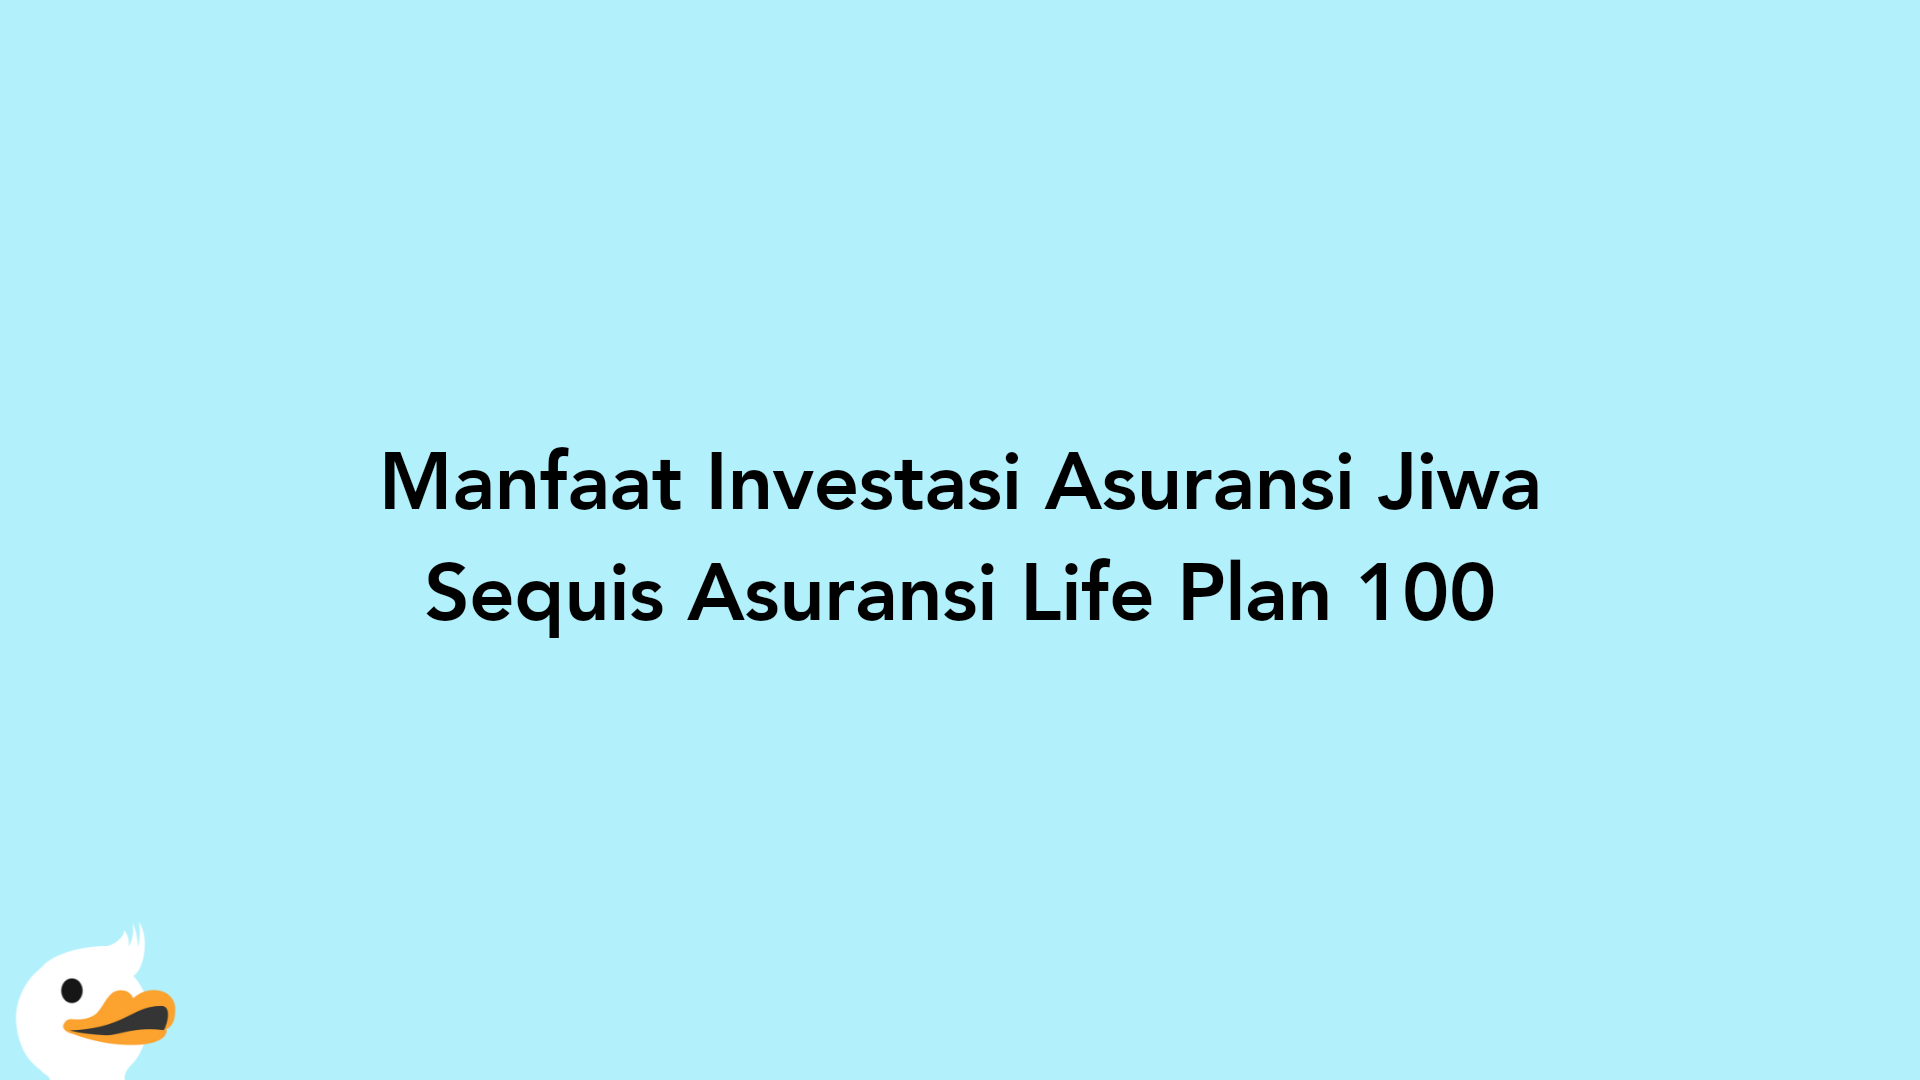 Manfaat Investasi Asuransi Jiwa Sequis Asuransi Life Plan 100